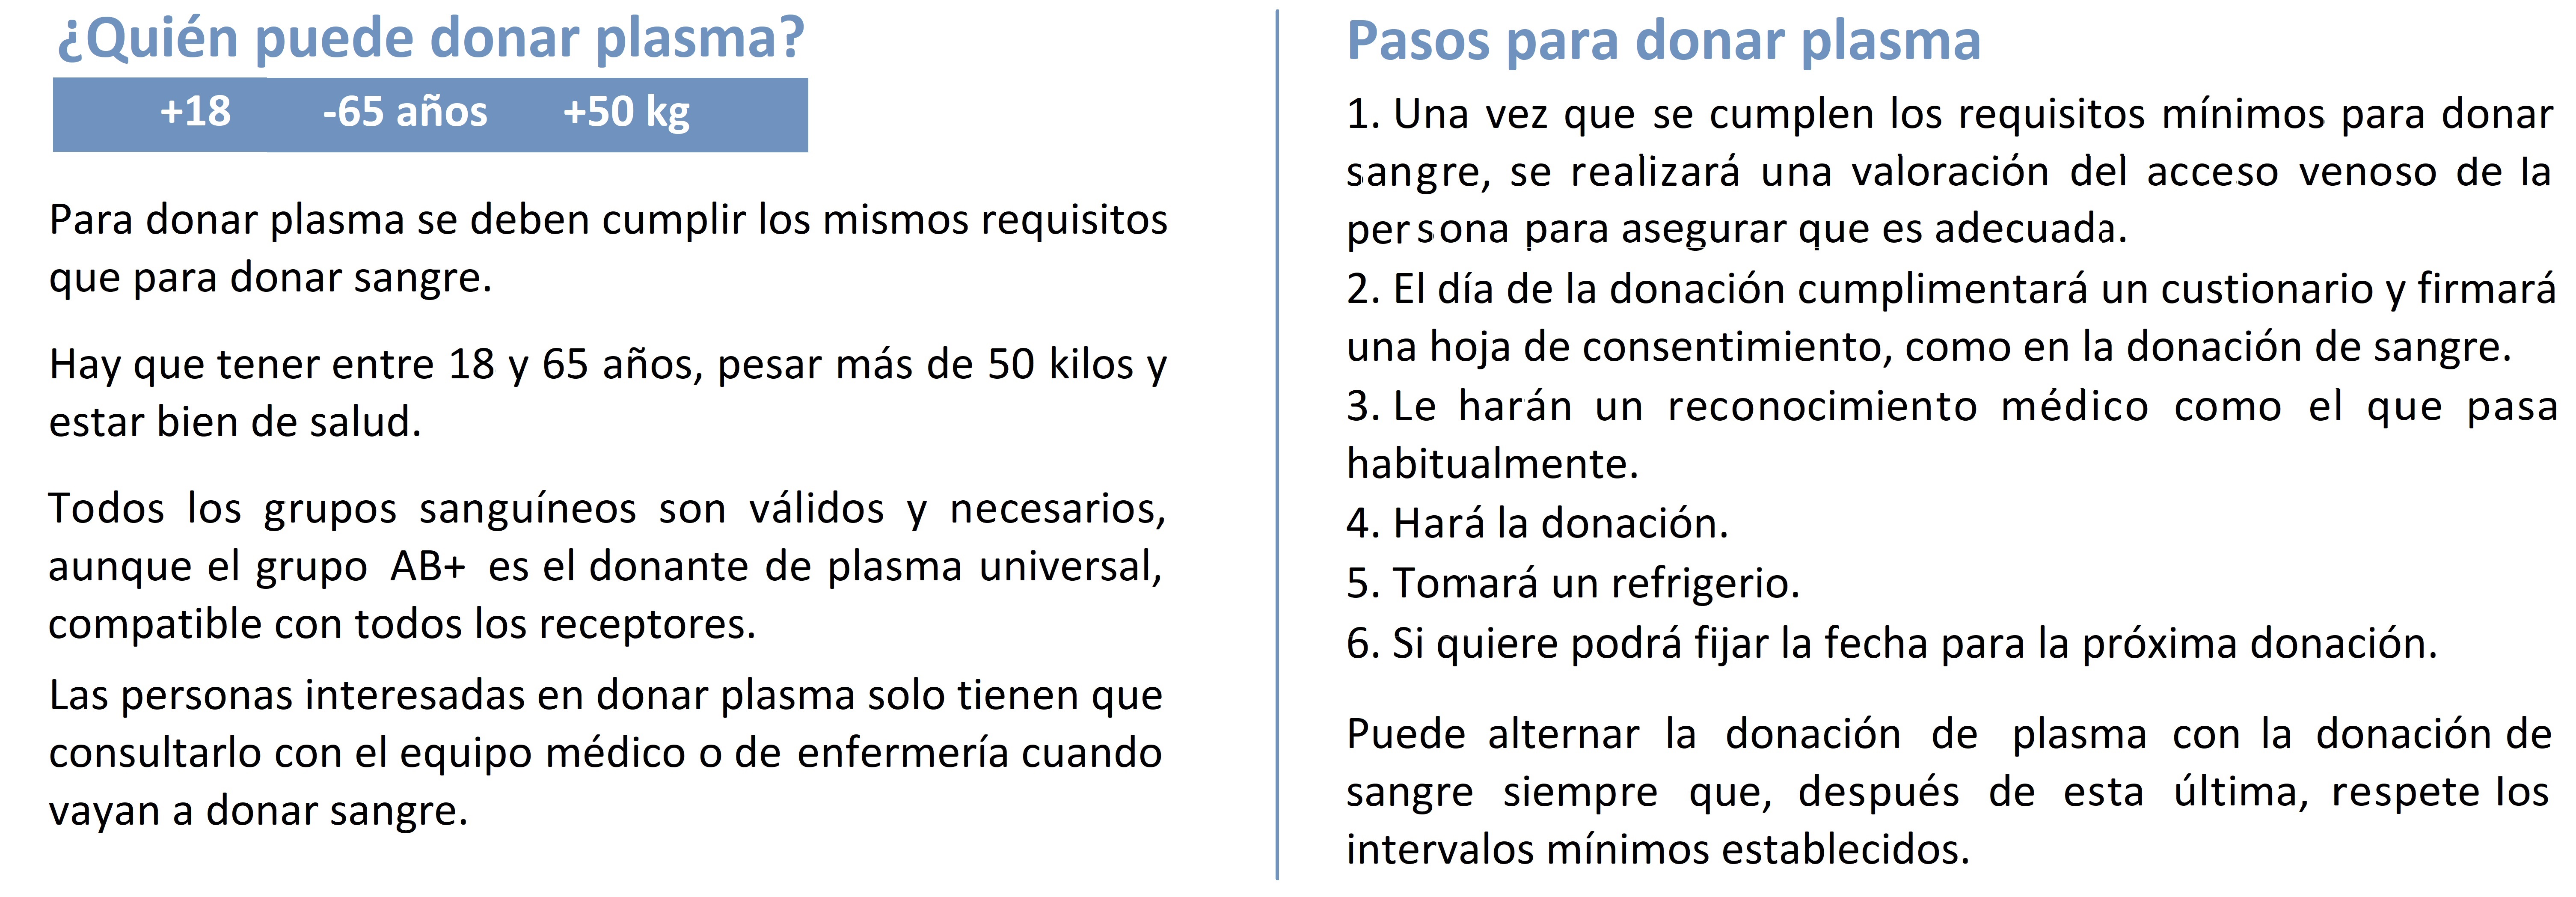 Requisitos para ser donante y pasos del proceso de donación de plasma.